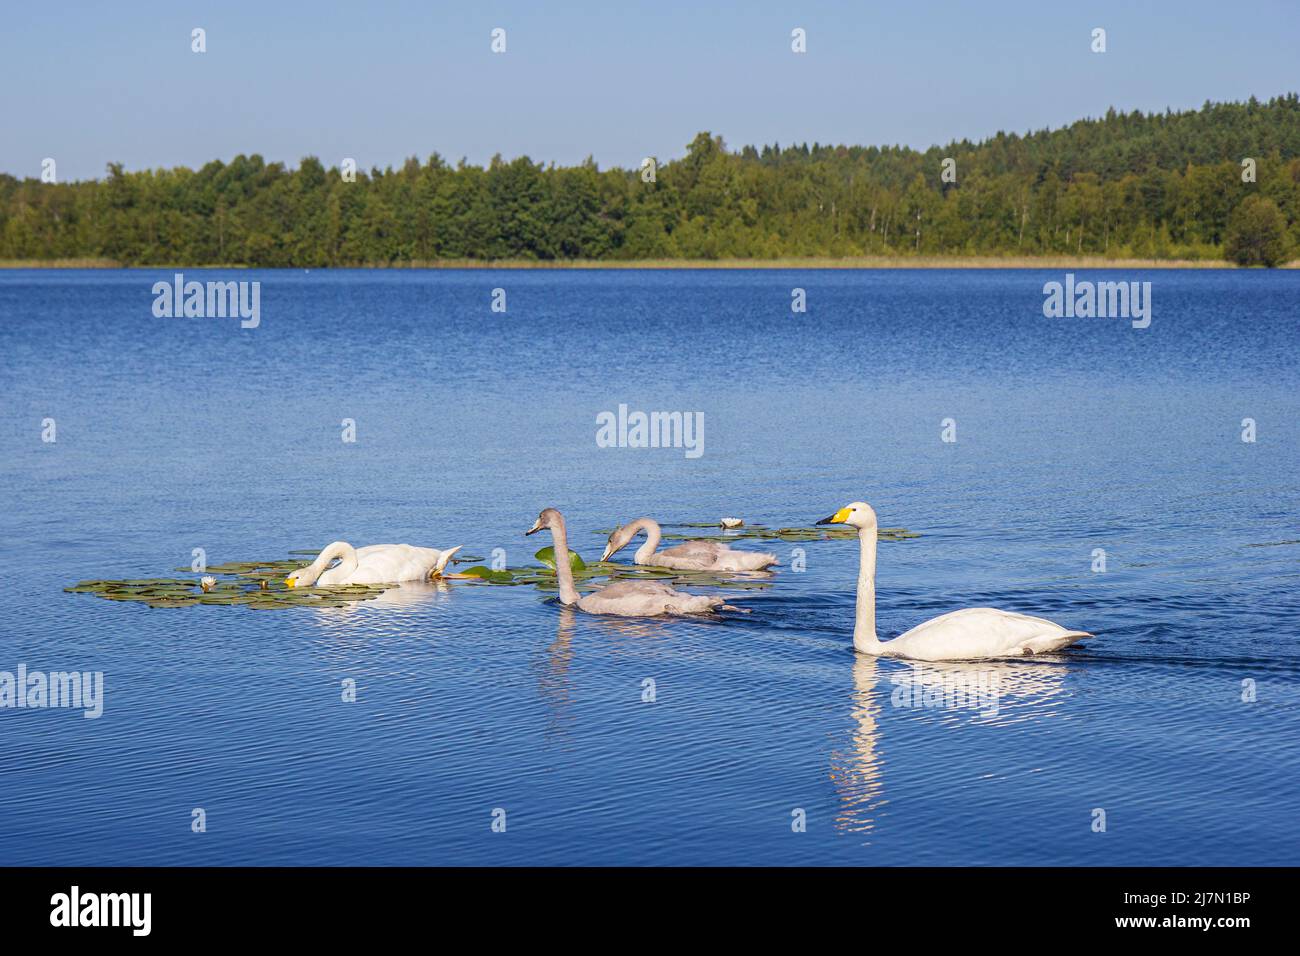 Dos cisnes adultos (Cygnus cygnus) (también conocido como cisne común) y dos cisnes jóvenes en un lago en Finlandia durante el verano. Foto de stock